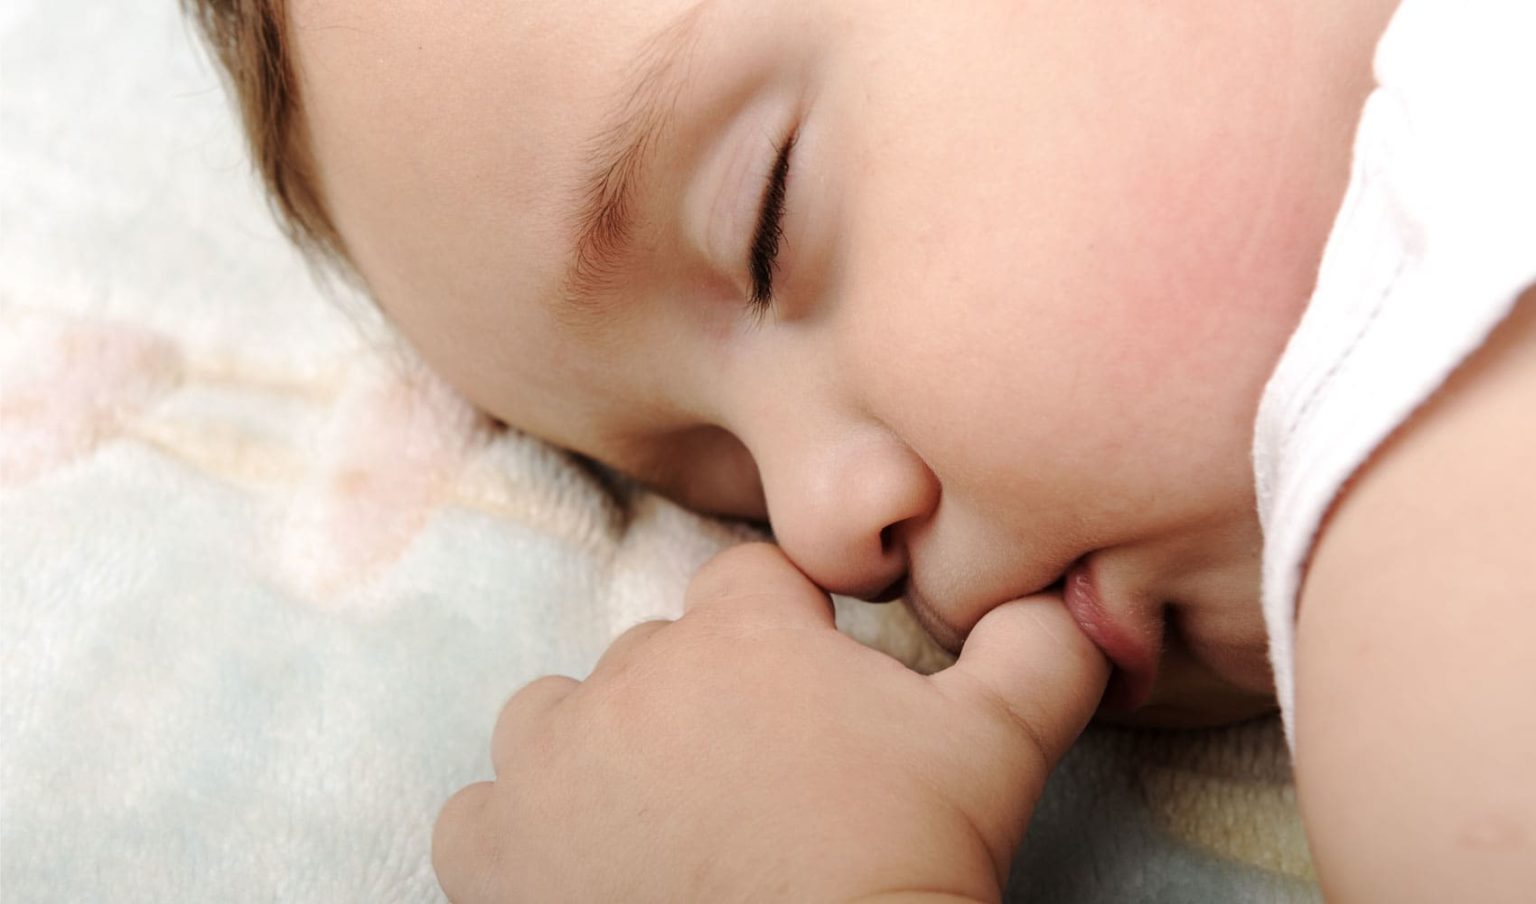 Спящий младенец. Сосательный рефлекс у младенца. Младенец с пальцем во рту. Сосание новорожденного.